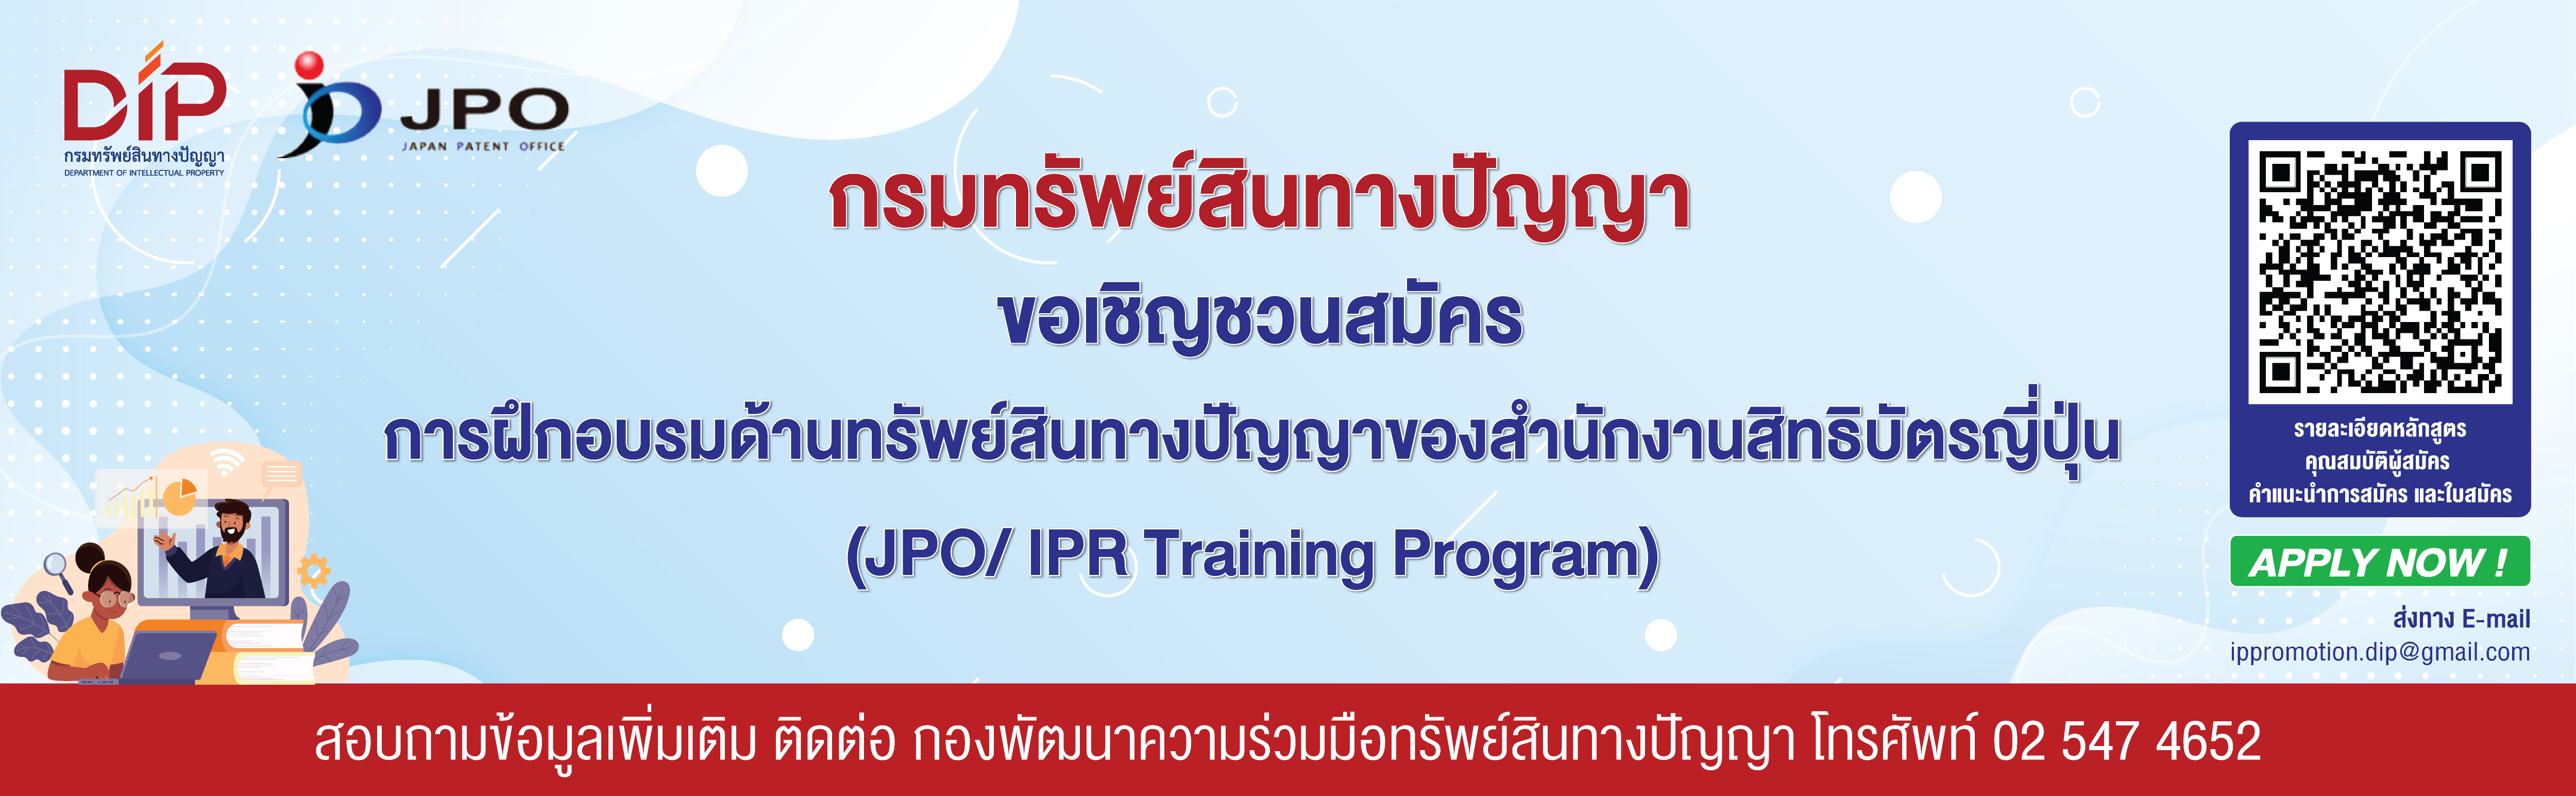 ขอเชิญสมัคร JPO/IPR Training Program